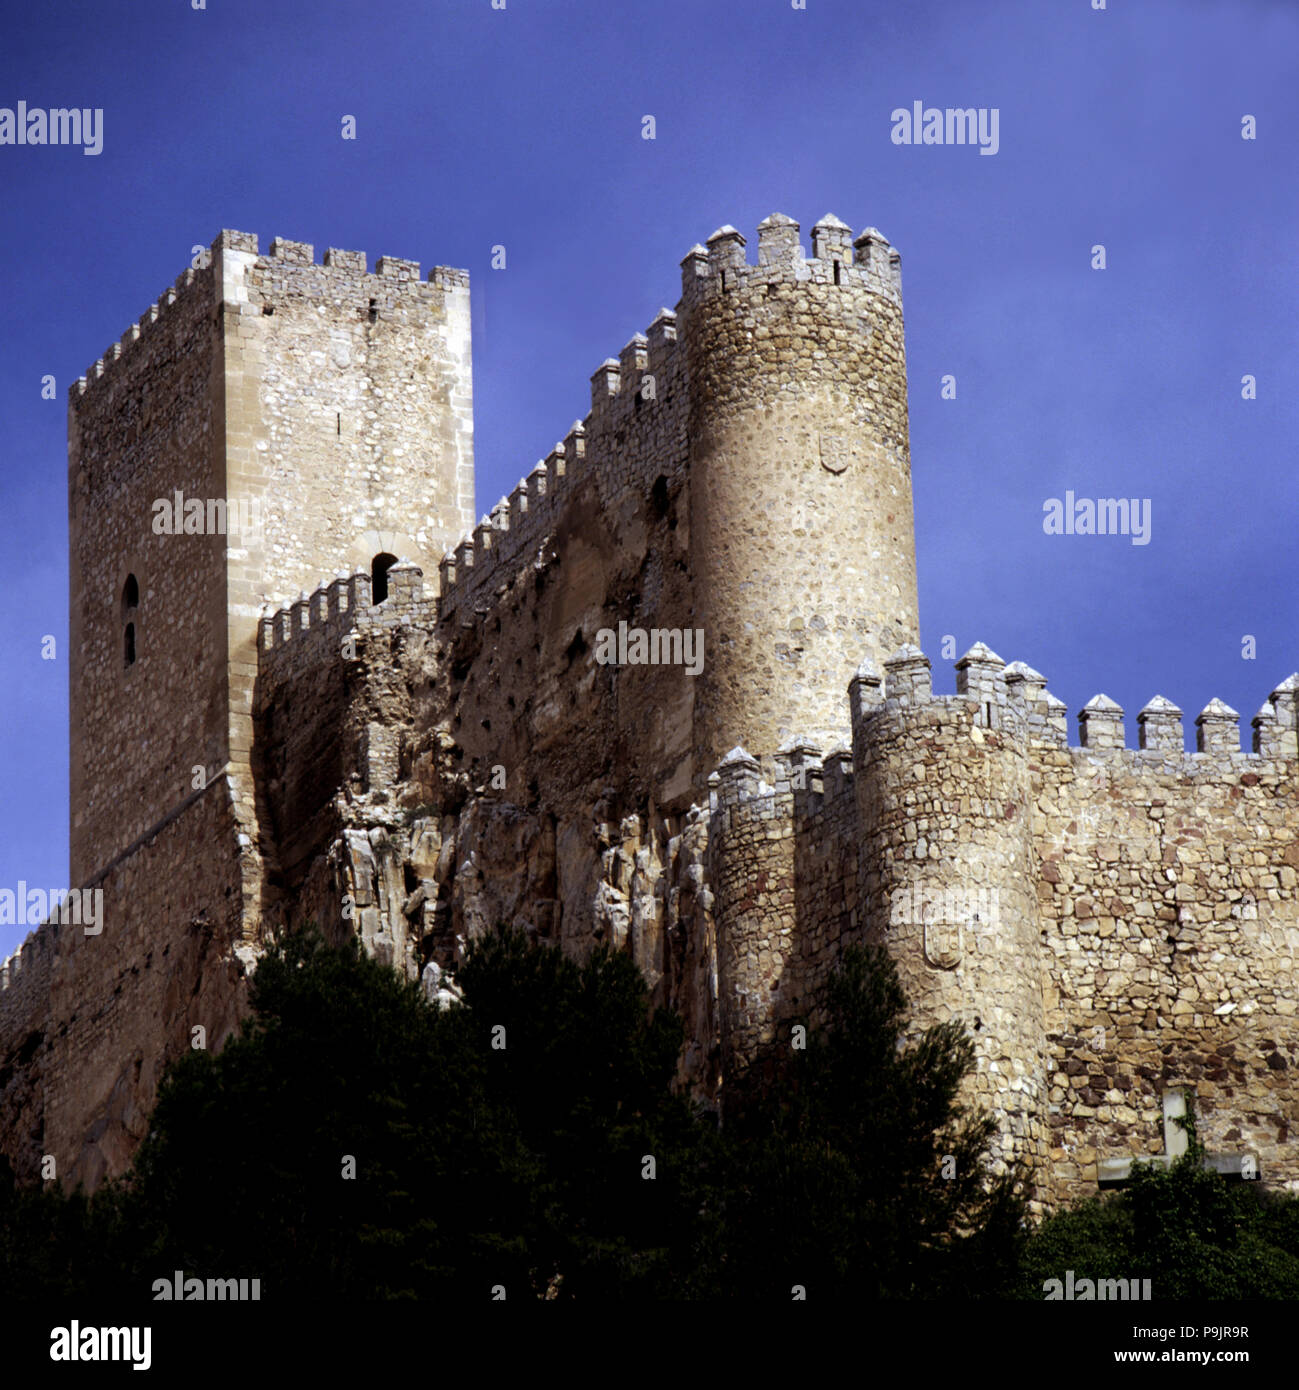 El Castillo de Almansa, de origen árabe, fue construida en el siglo XV por el marqués de Villena. Foto de stock